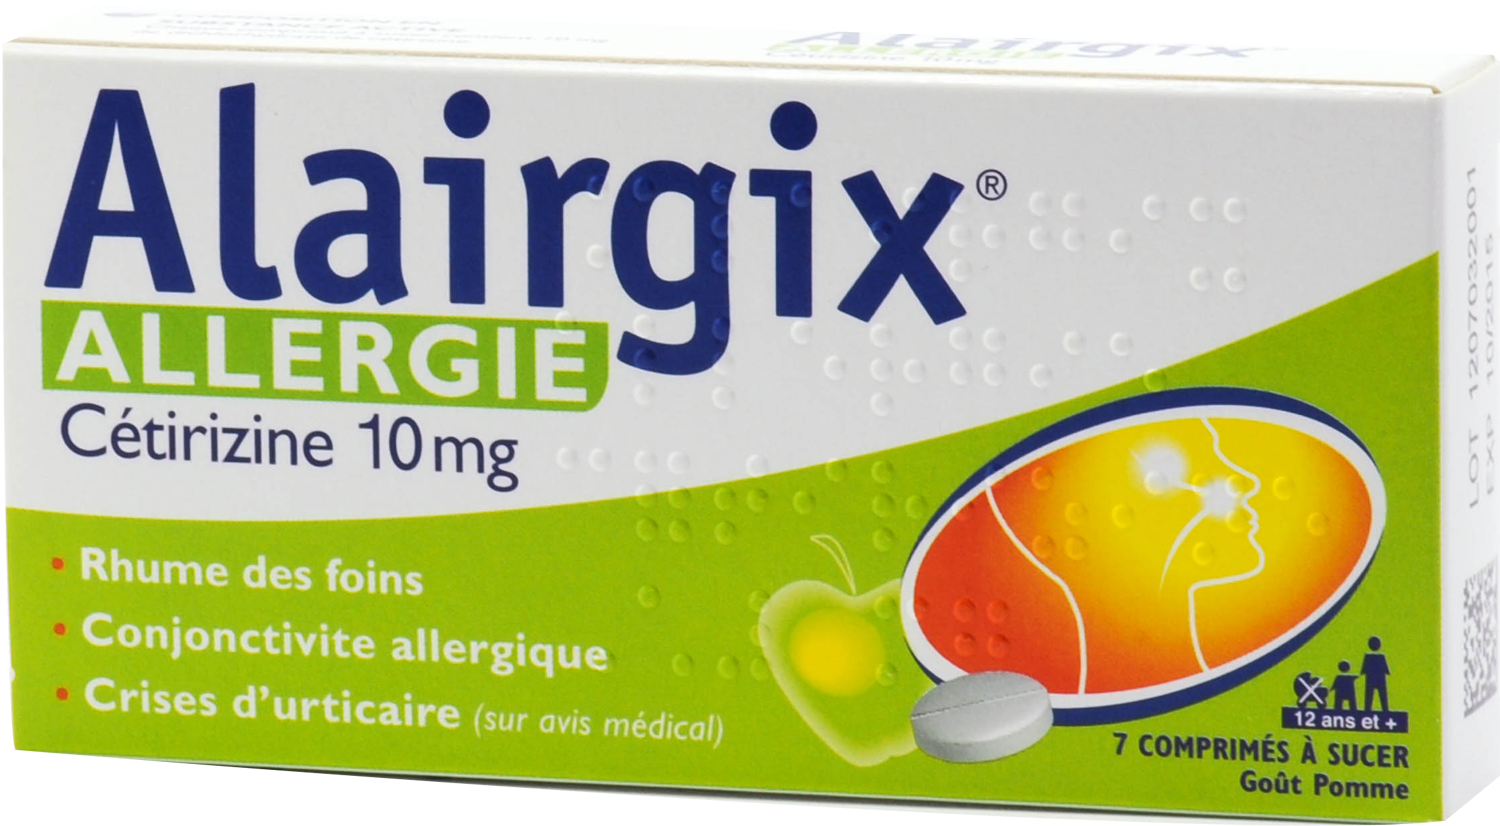 Alairgix allergie cetirizine 10 mg, comprimé à sucer sécable